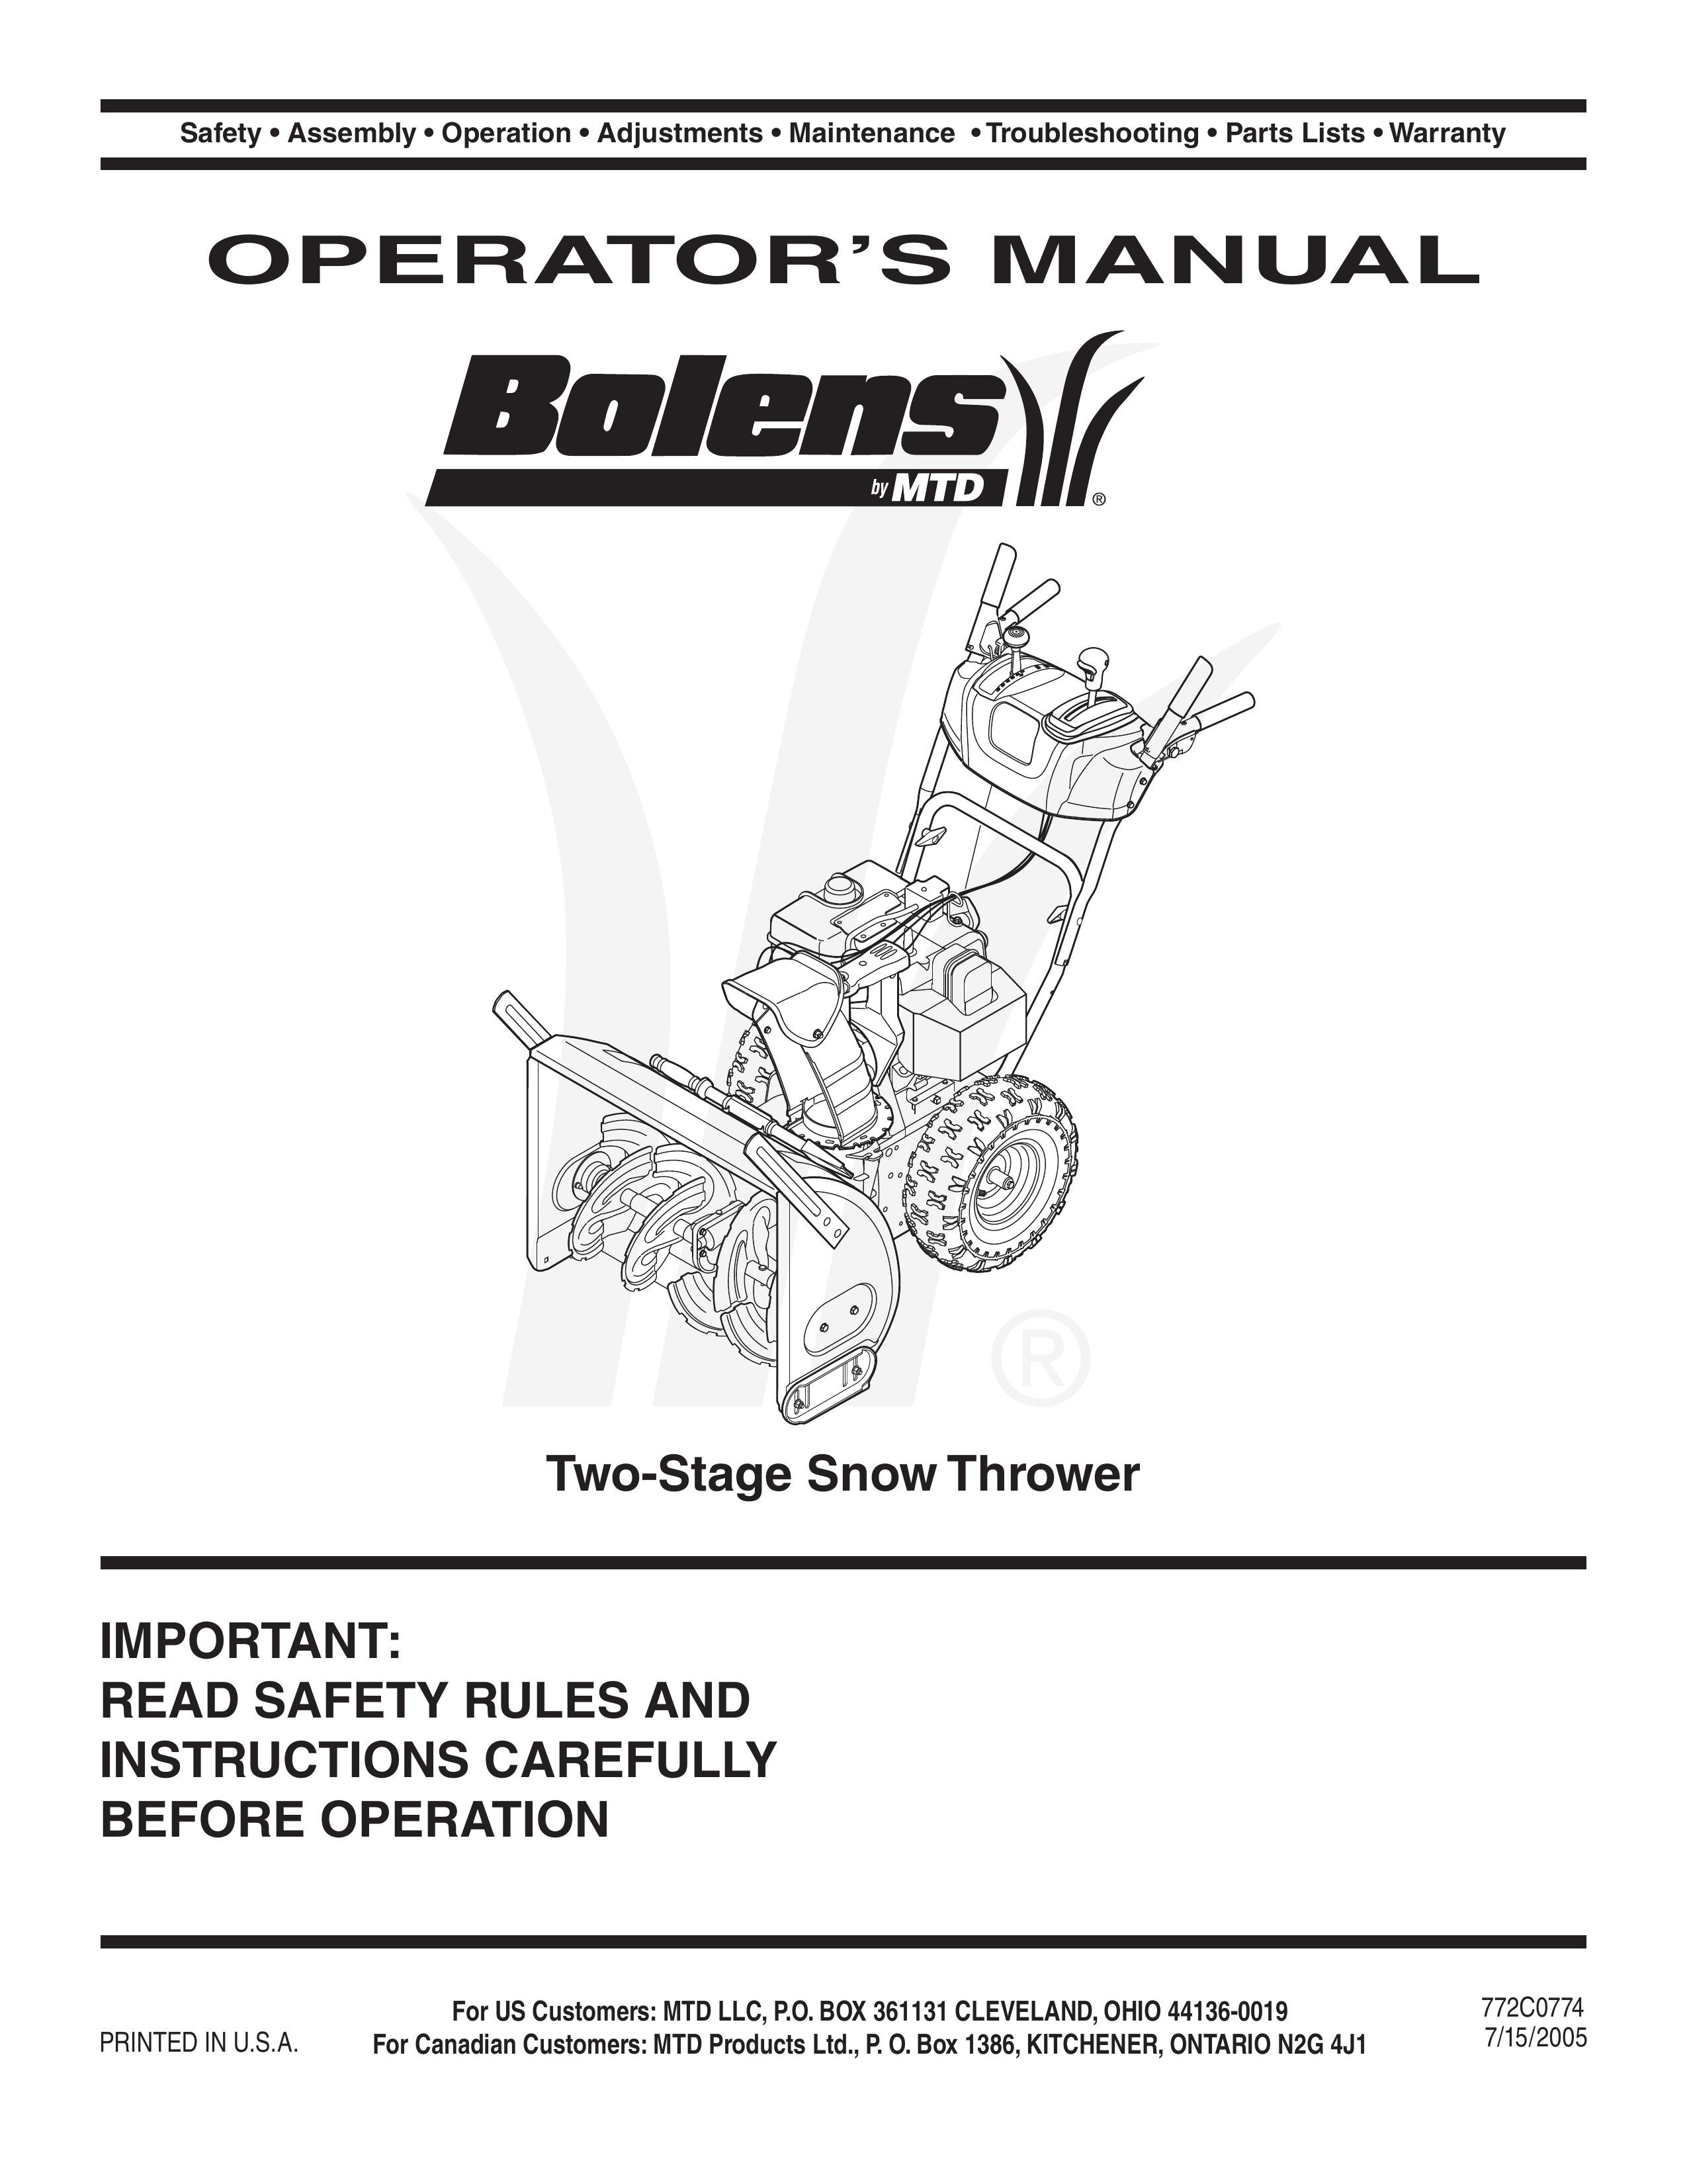 Bolens MTD Snow Blower User Manual